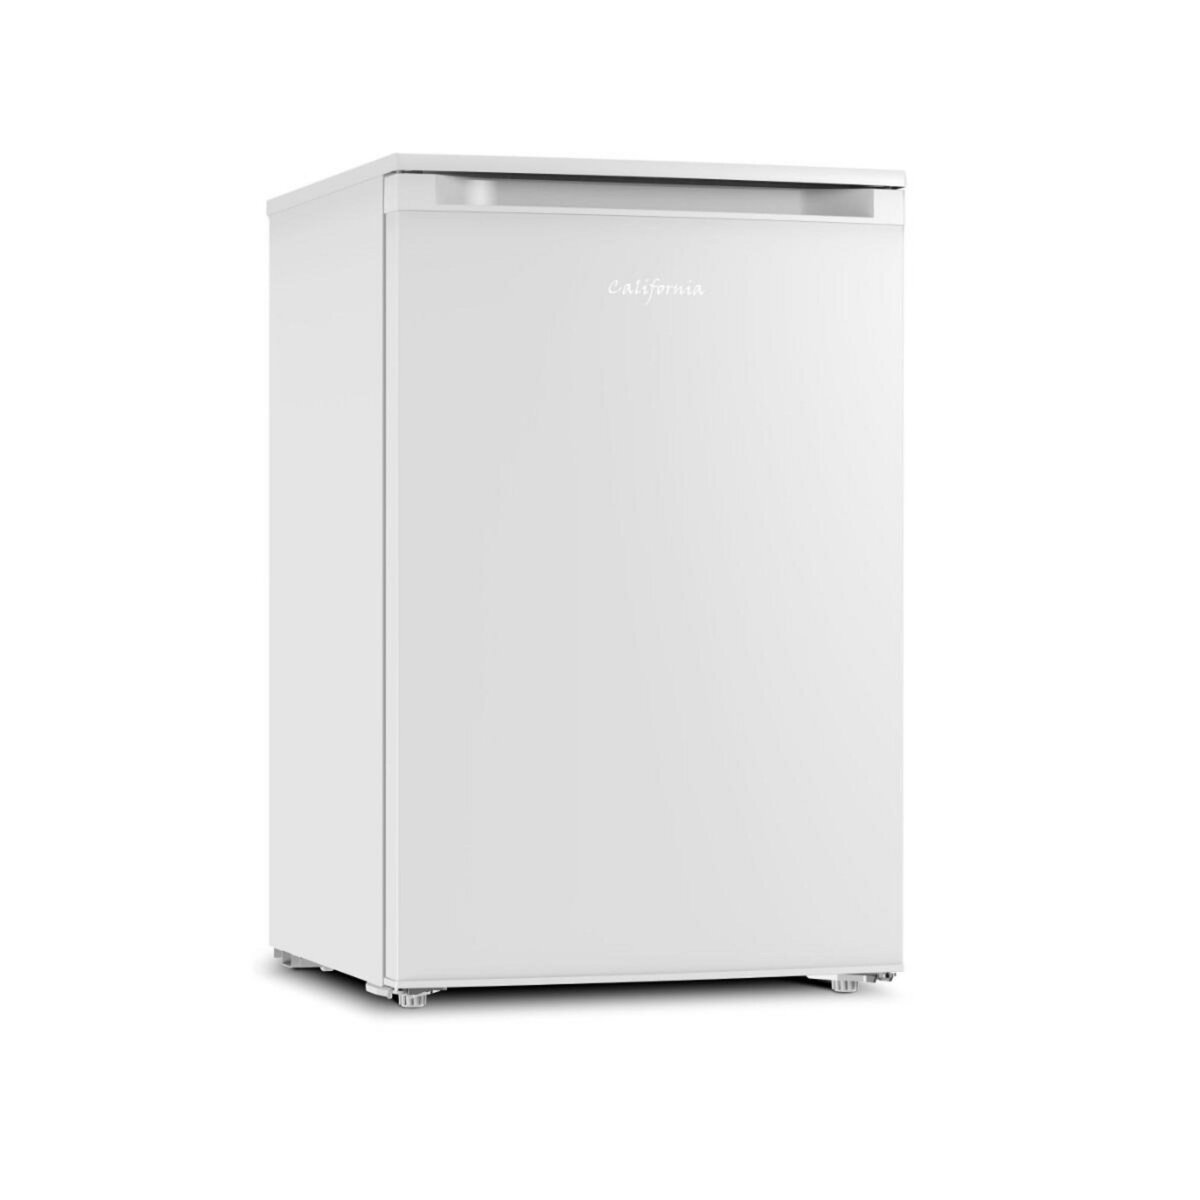 California Réfrigérateur table top 55cm 98l blanc - CCFS98AW-11 pas cher 